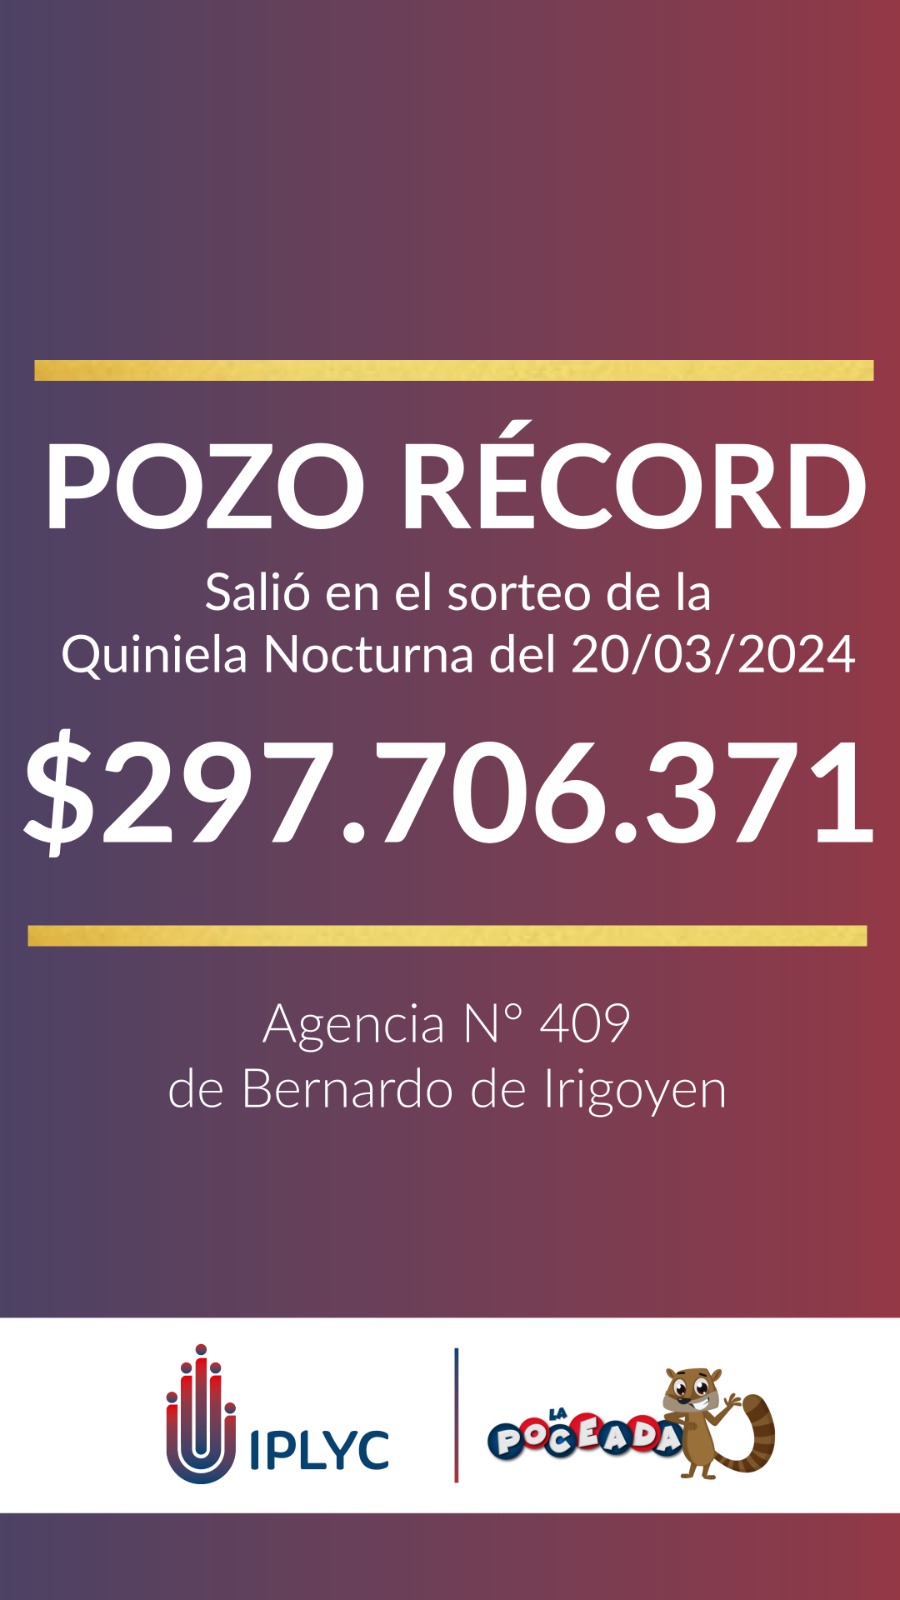 Un apostador de Bernardo Irigoyen se llevó casi $300 millones de la Poceada Misionera